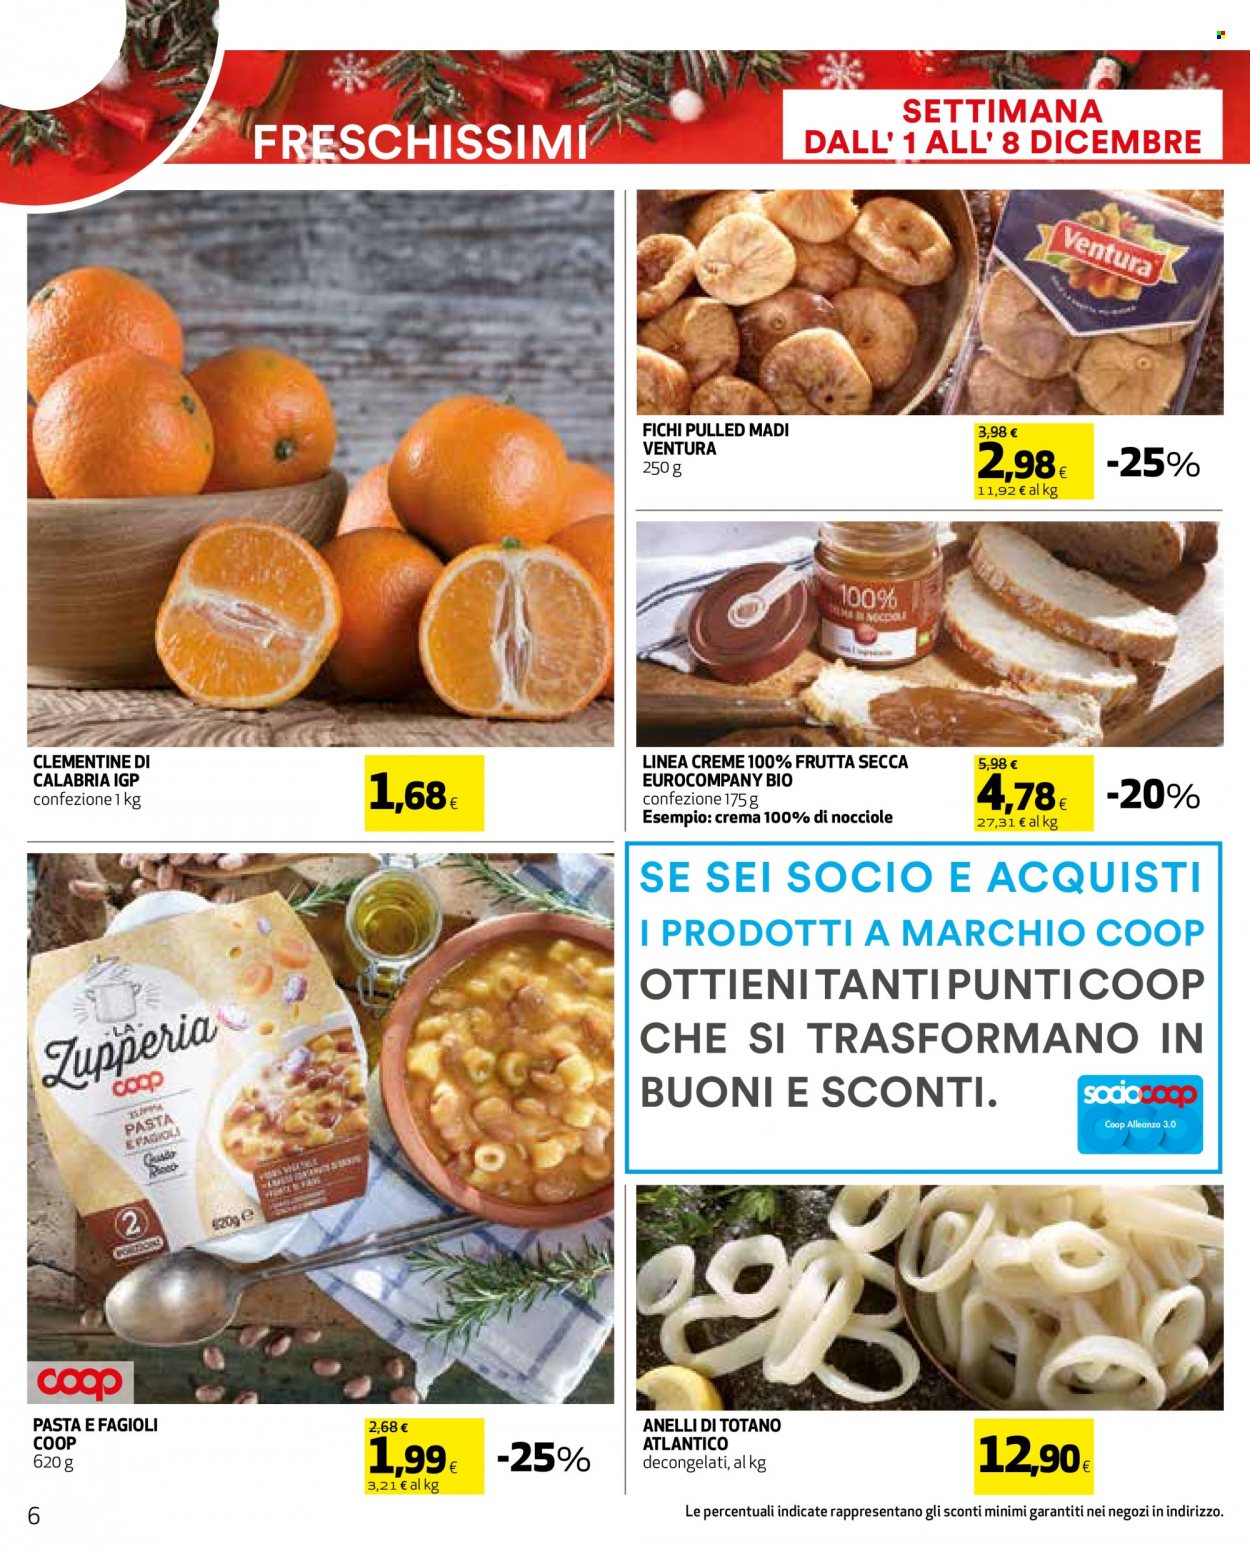 thumbnail - Volantino Coop - 24/11/2022 - 8/12/2022 - Prodotti in offerta - clementine, fichi, totani, anelli di totano, sale, fichi secchi. Pagina 6.